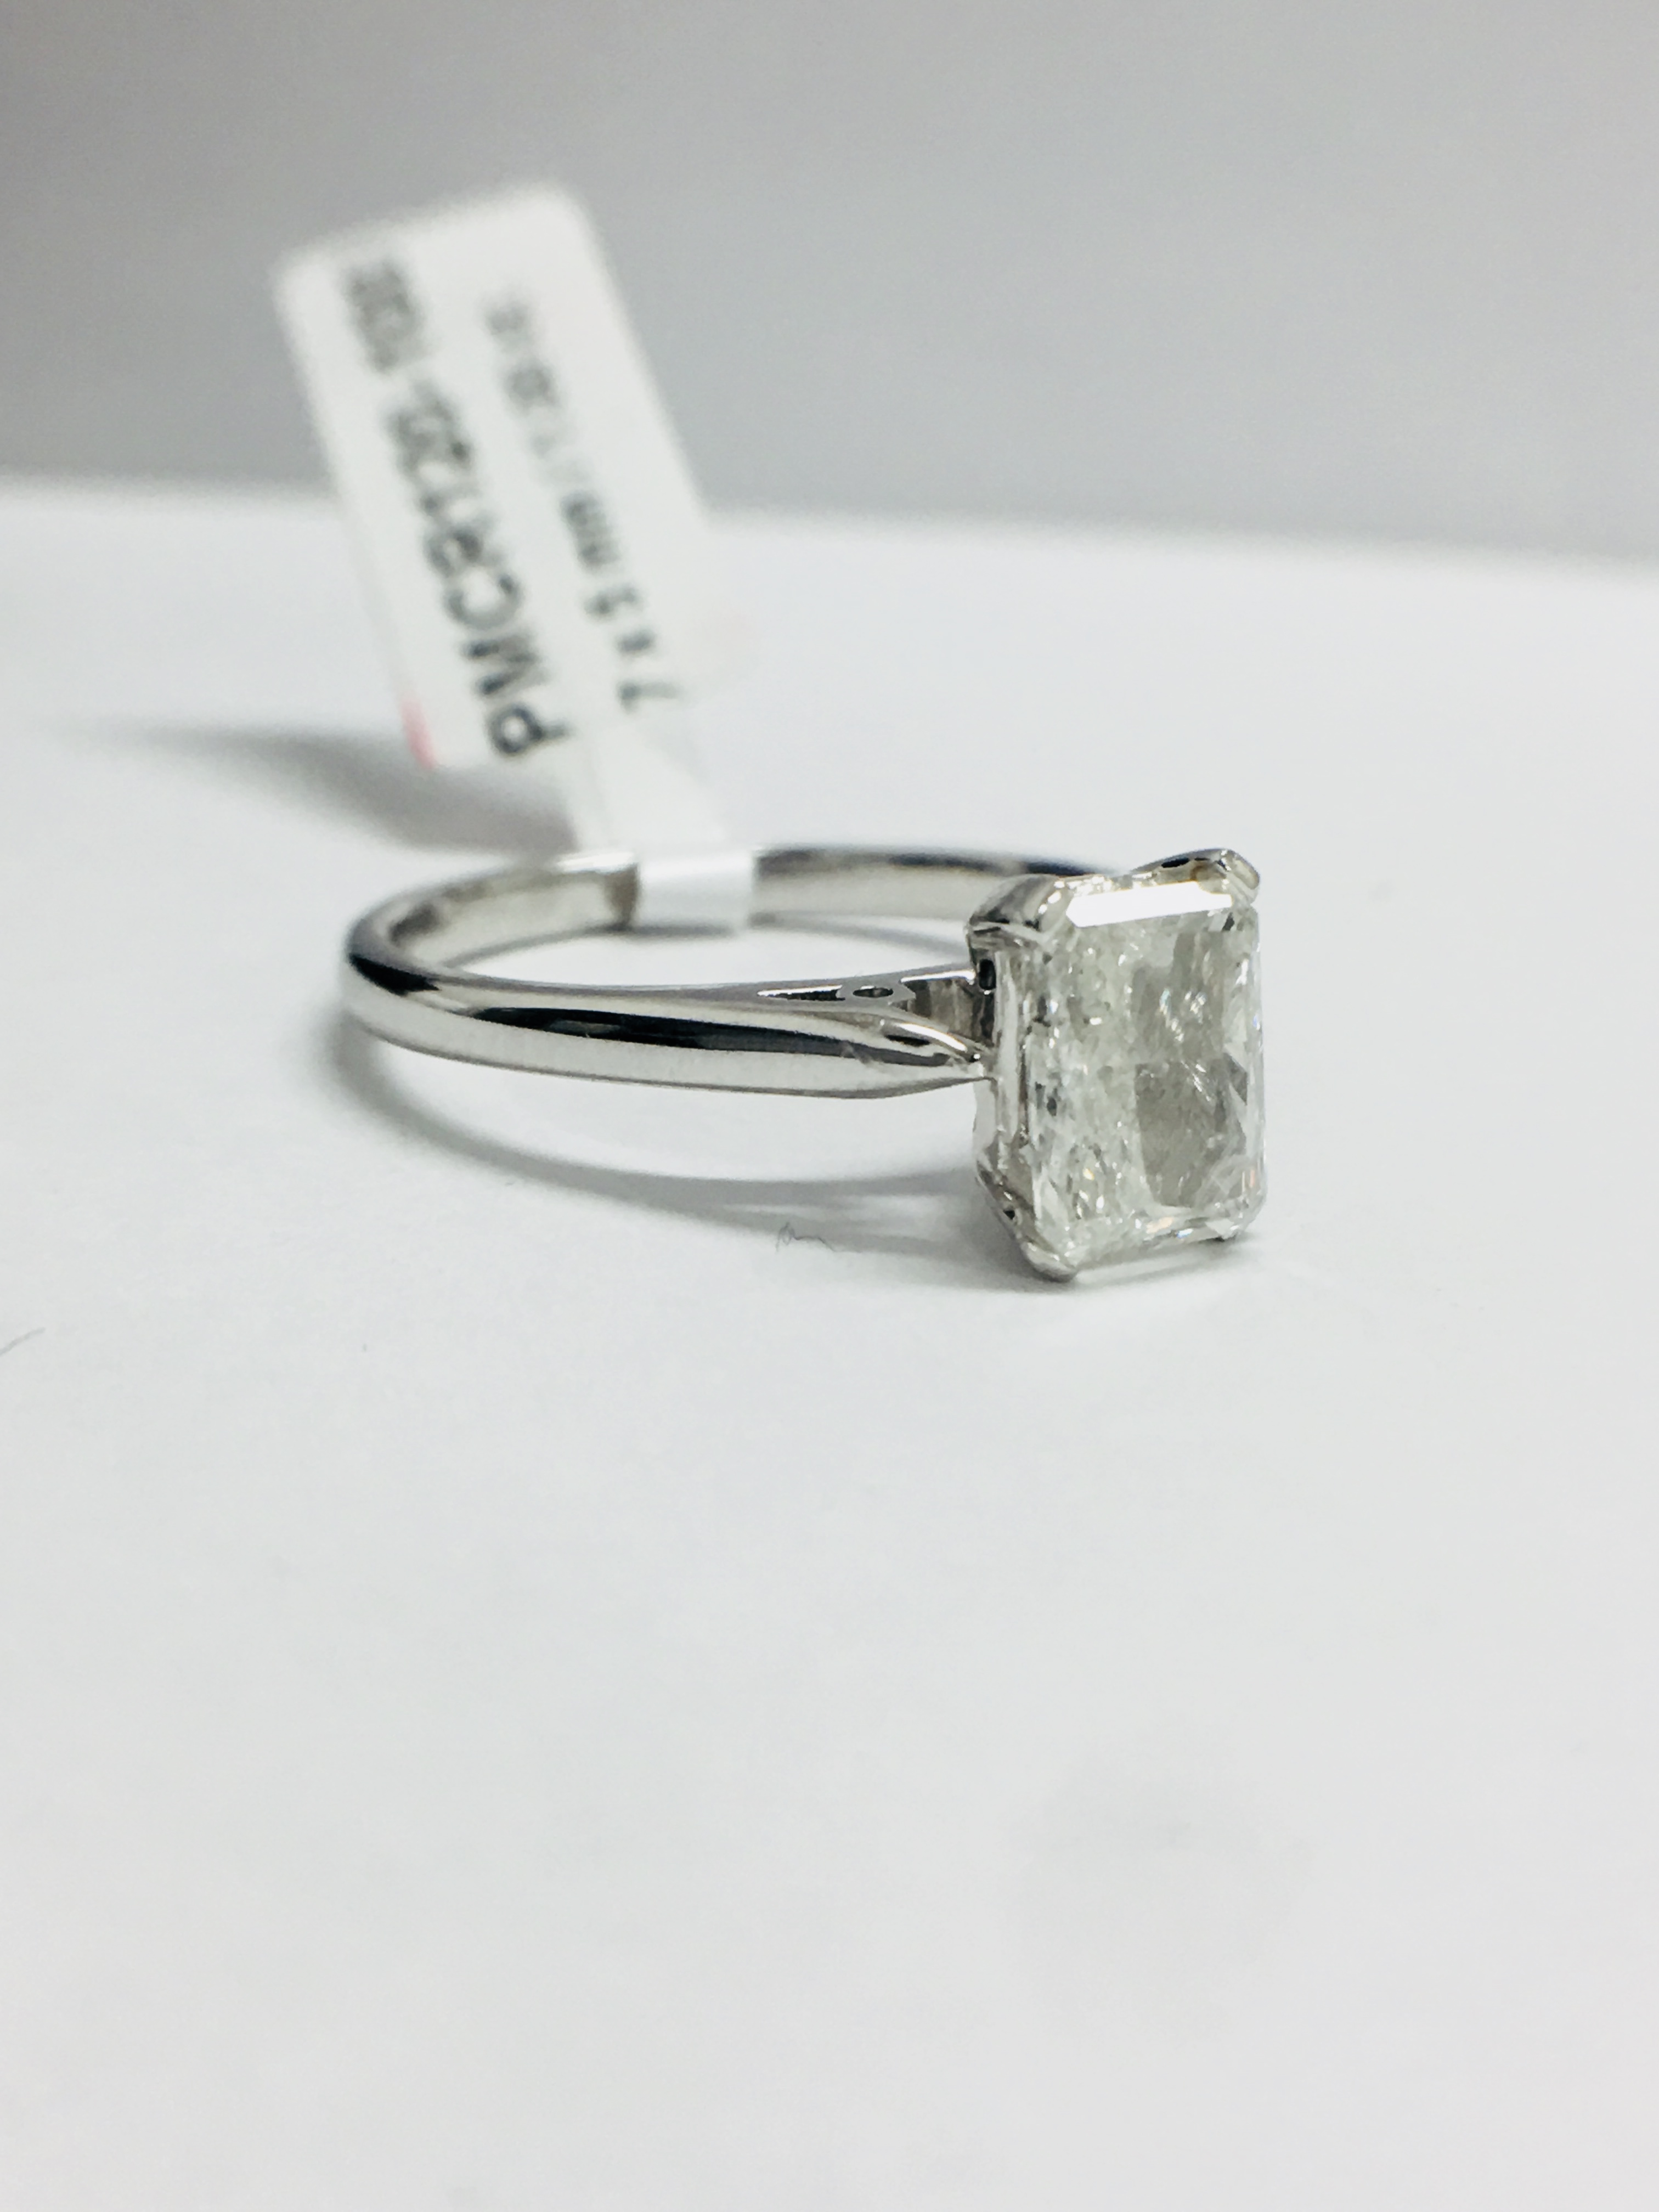 1Ct Radiant Cut Diamond Solitaire Platinum Ring, - Image 7 of 7